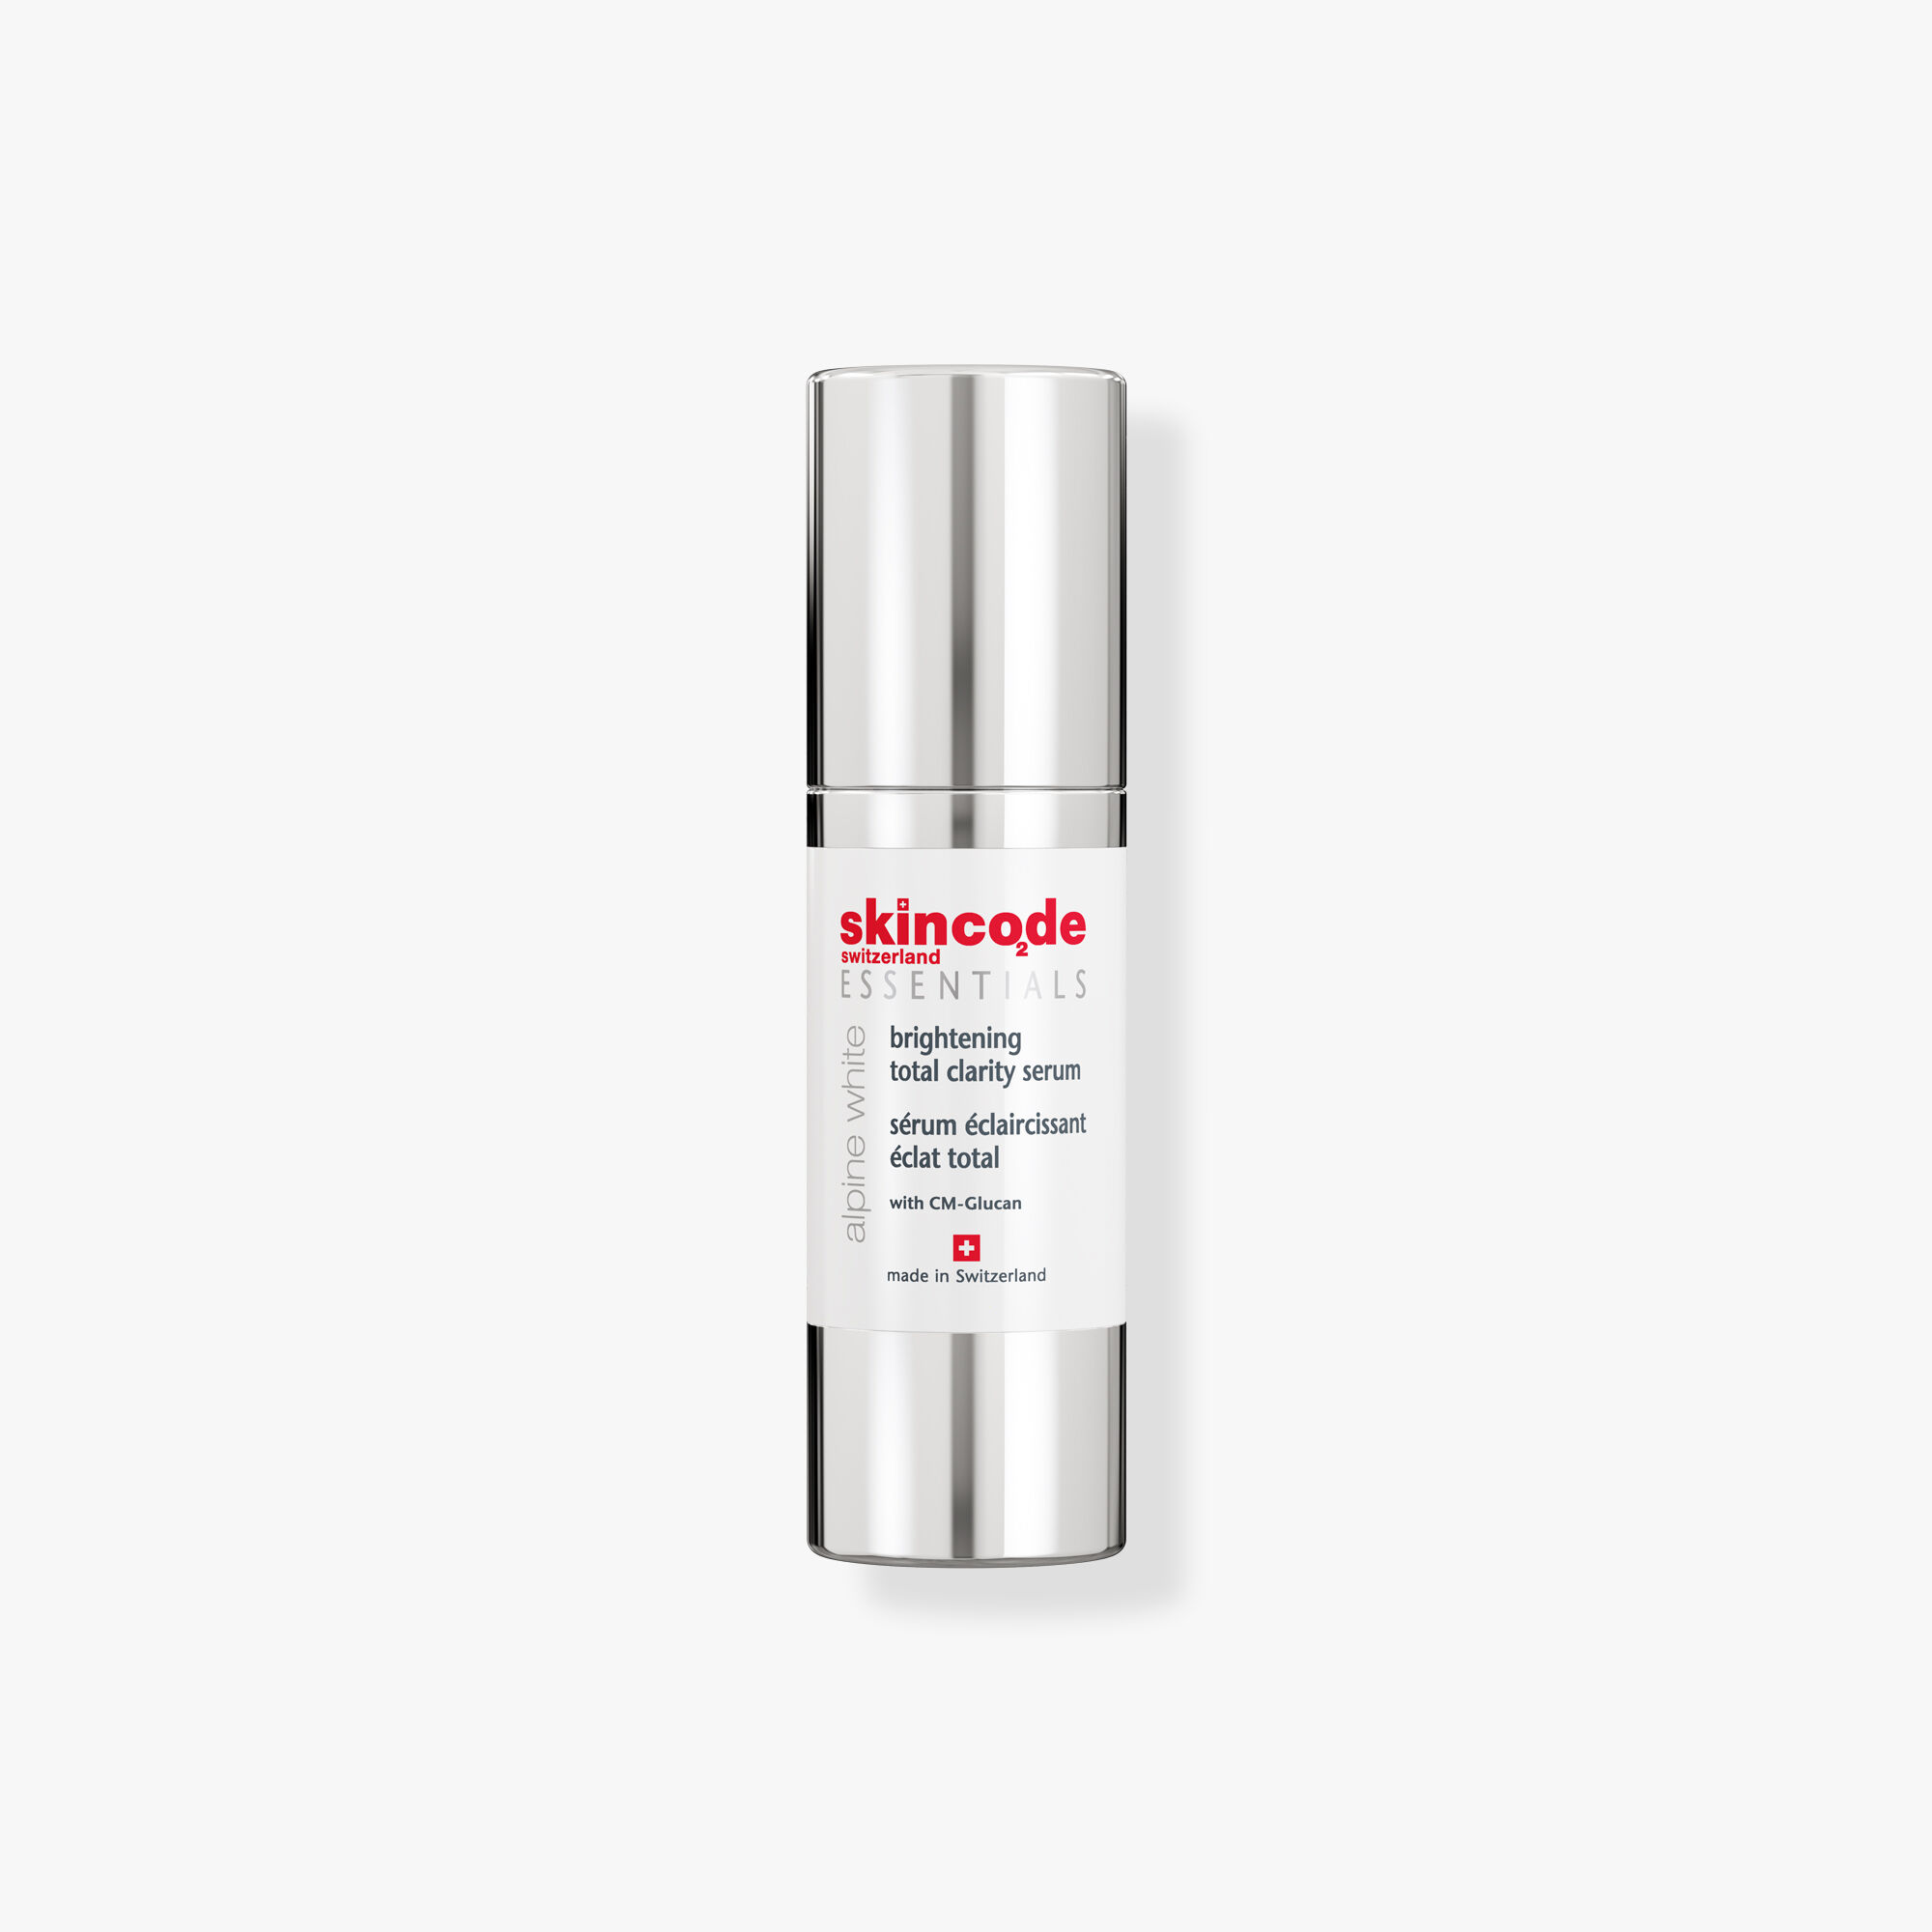 SkinCode - Brightening total clarity serum